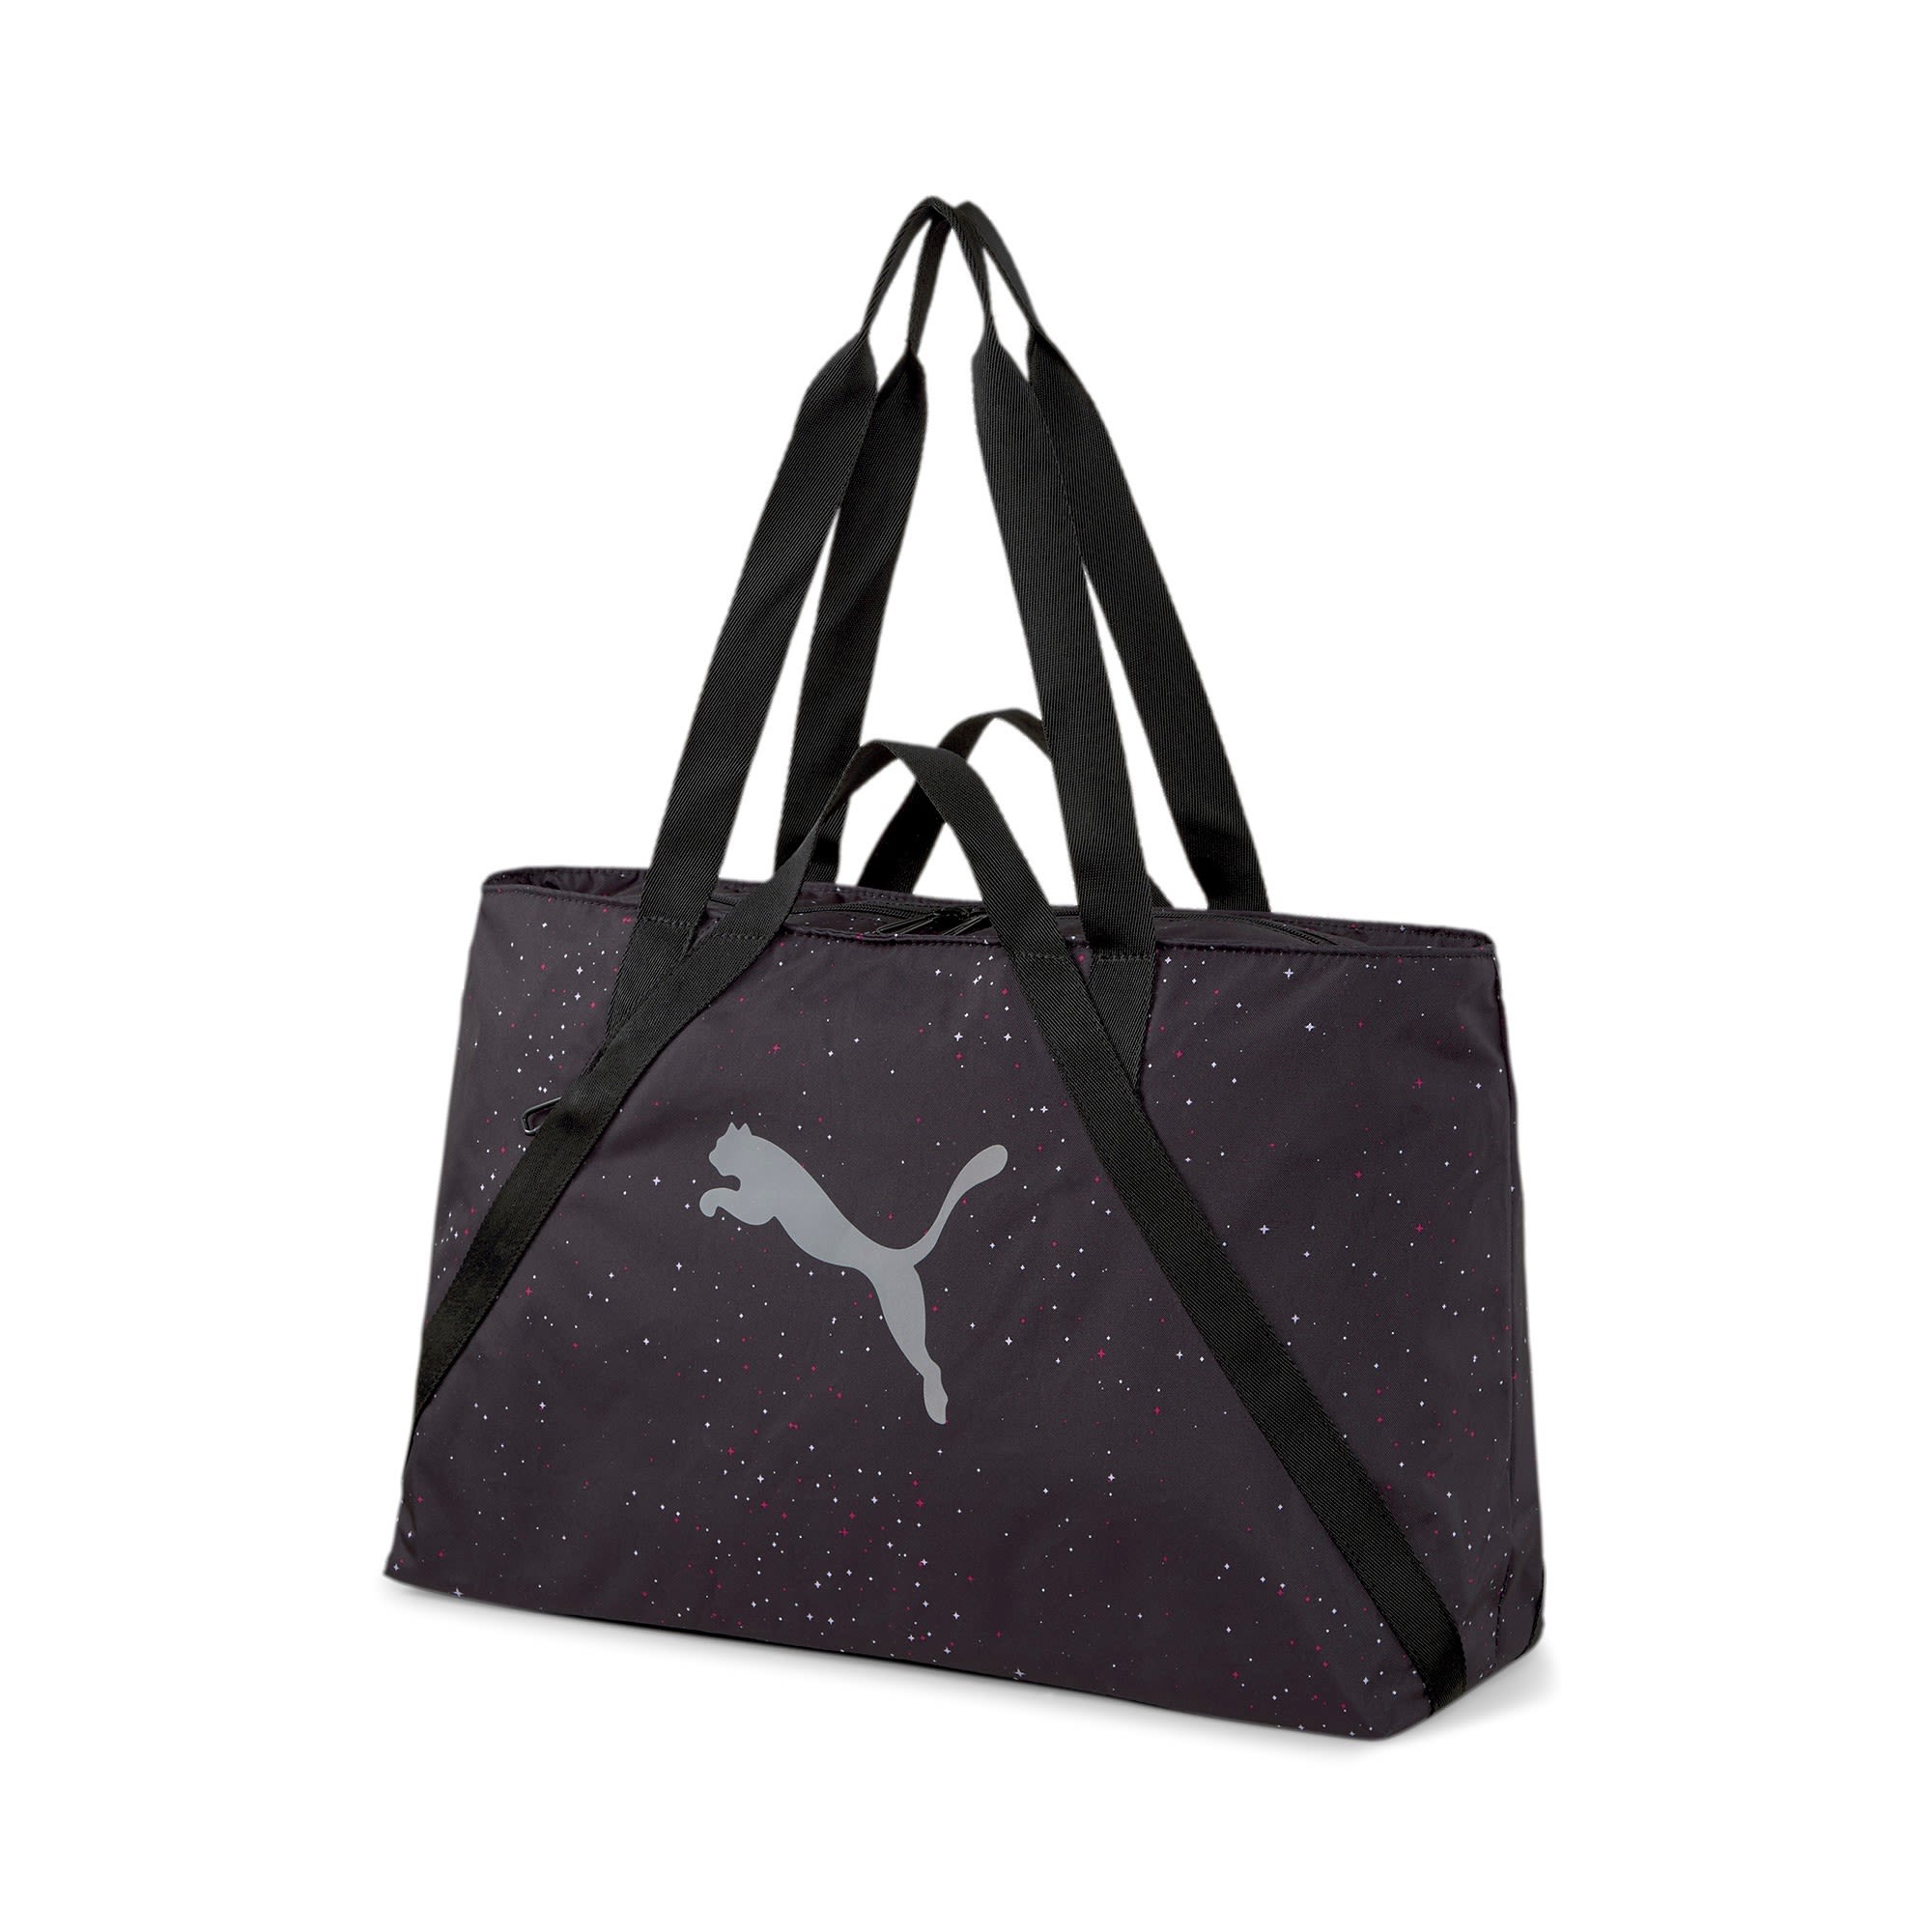 Puma AT Essentials Shopper Story Pack Schwarz- Female Sporttaschen- Grsse 23l - Farbe Puma Black unter Puma